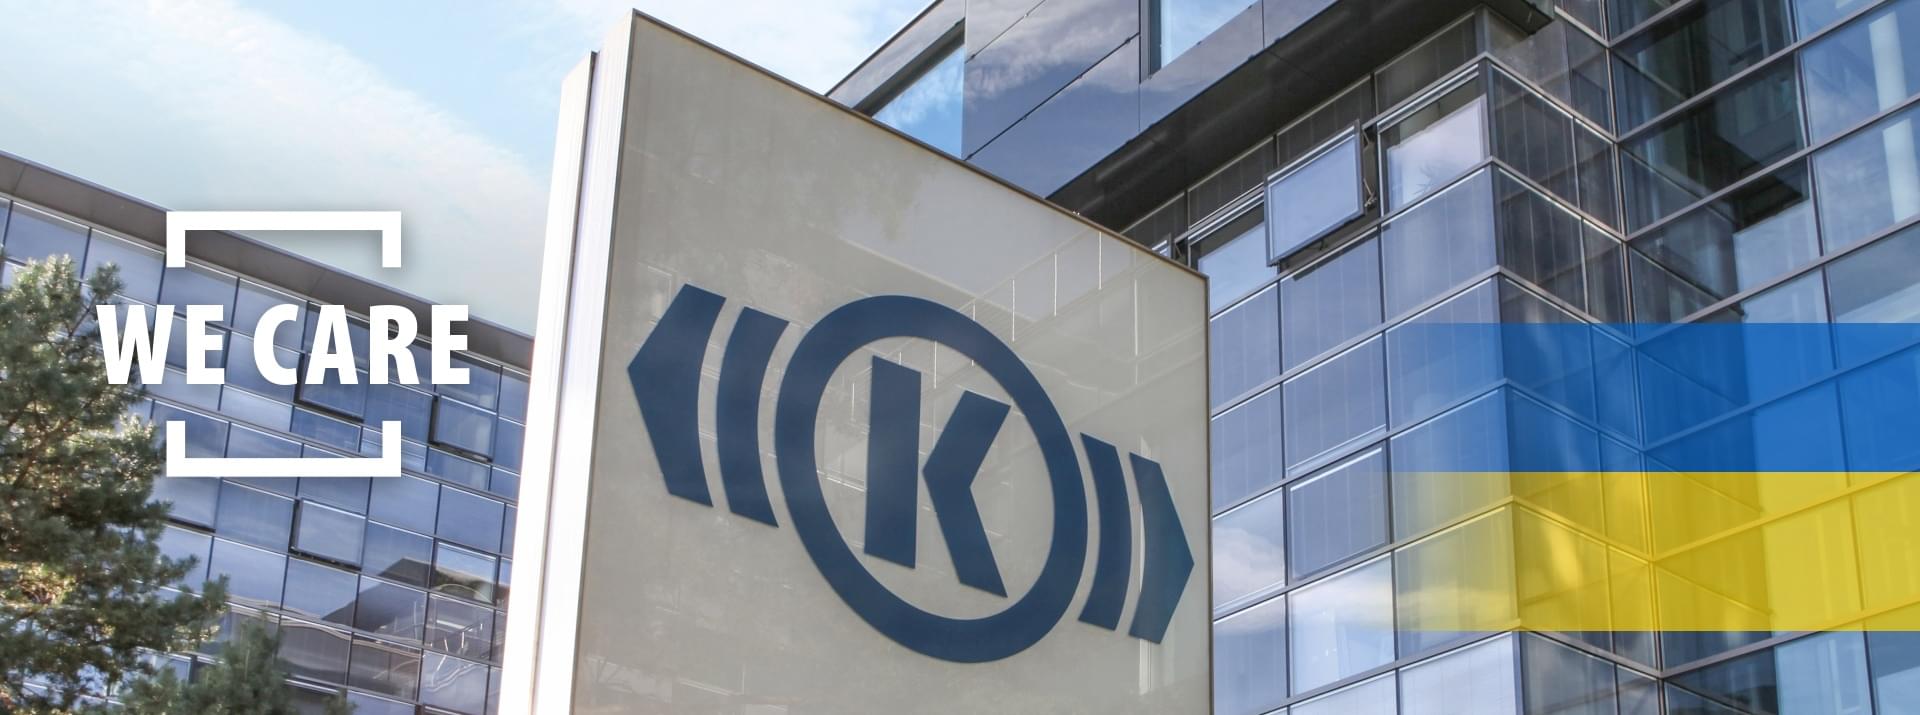 Foto eines Gebäudes von Knorr-Bremse am Firmenhauptsitz in München, auf das grafisch der Schriftzug "We Care" und eine ukrainische Flagge gesetzt wurde.